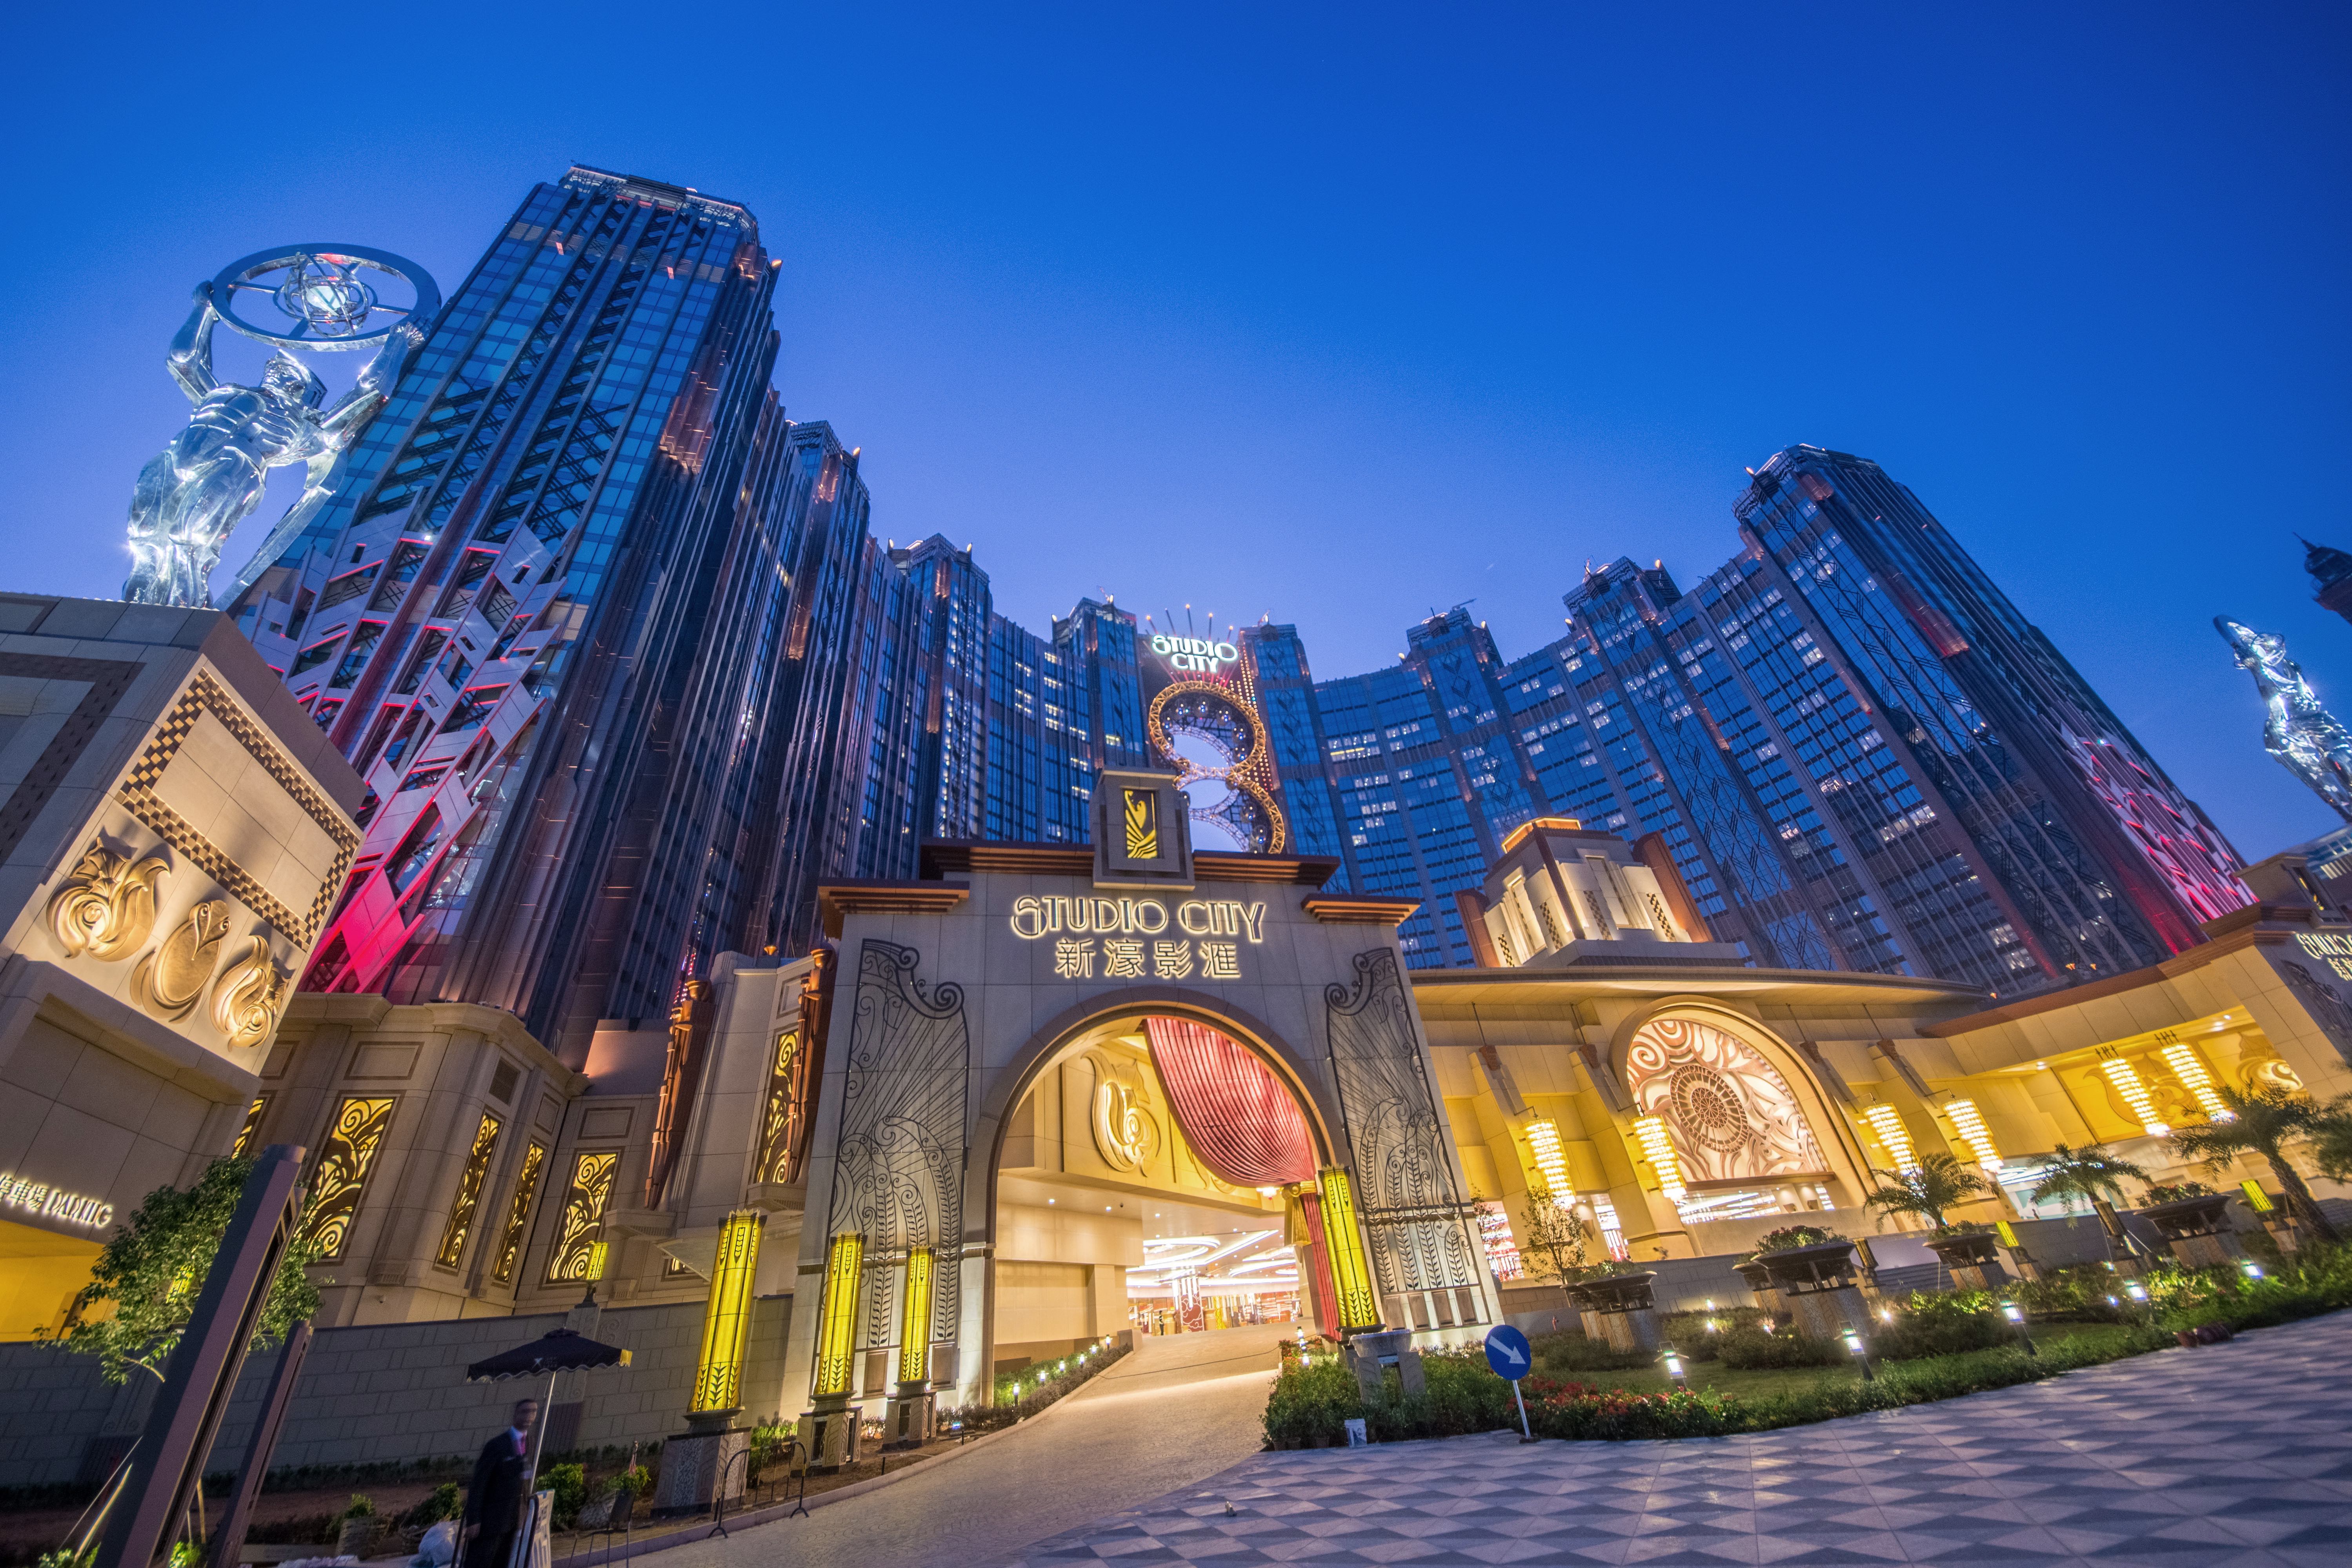 米其林指南香港澳门载誉呈献第二届米其林指南街头美食节澳门2018